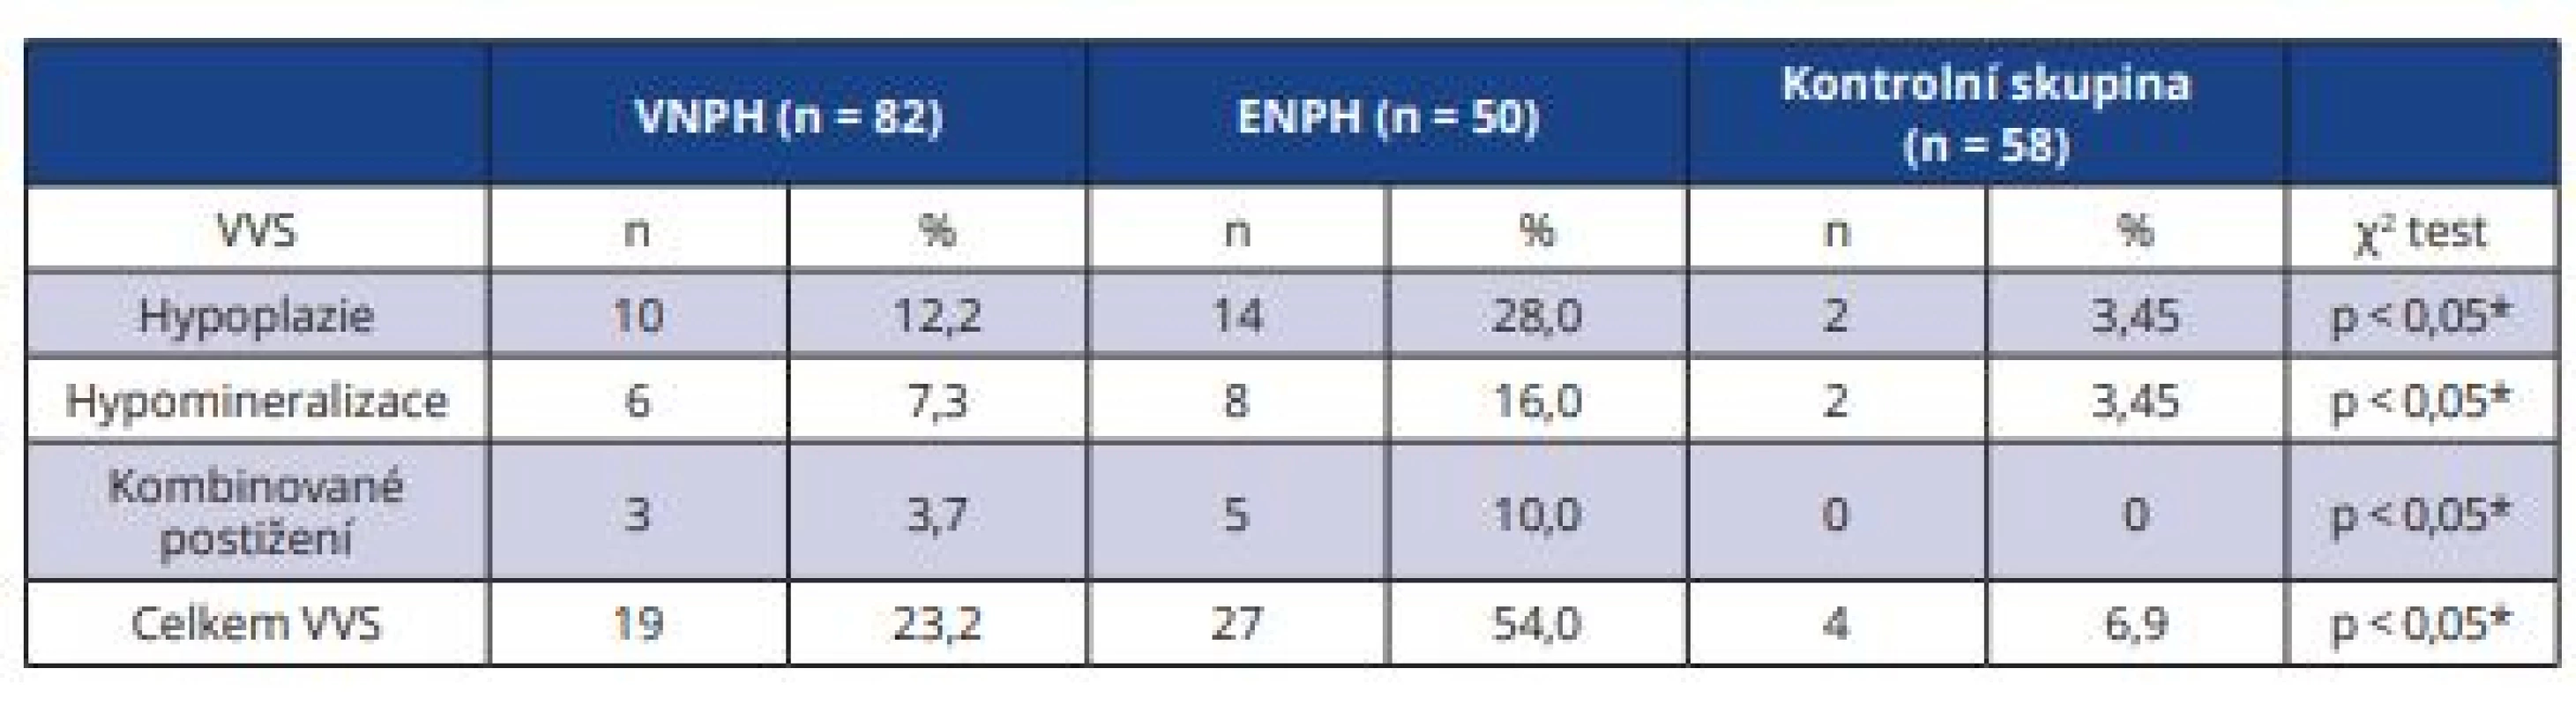  Výskyt vývojových vad skloviny u dětí s VNPH a ENPH a kontrolní skupiny<br>
Tab. 3 Prevalence of developmental defects of enamel in children with VLBW and ELBW
and in control group